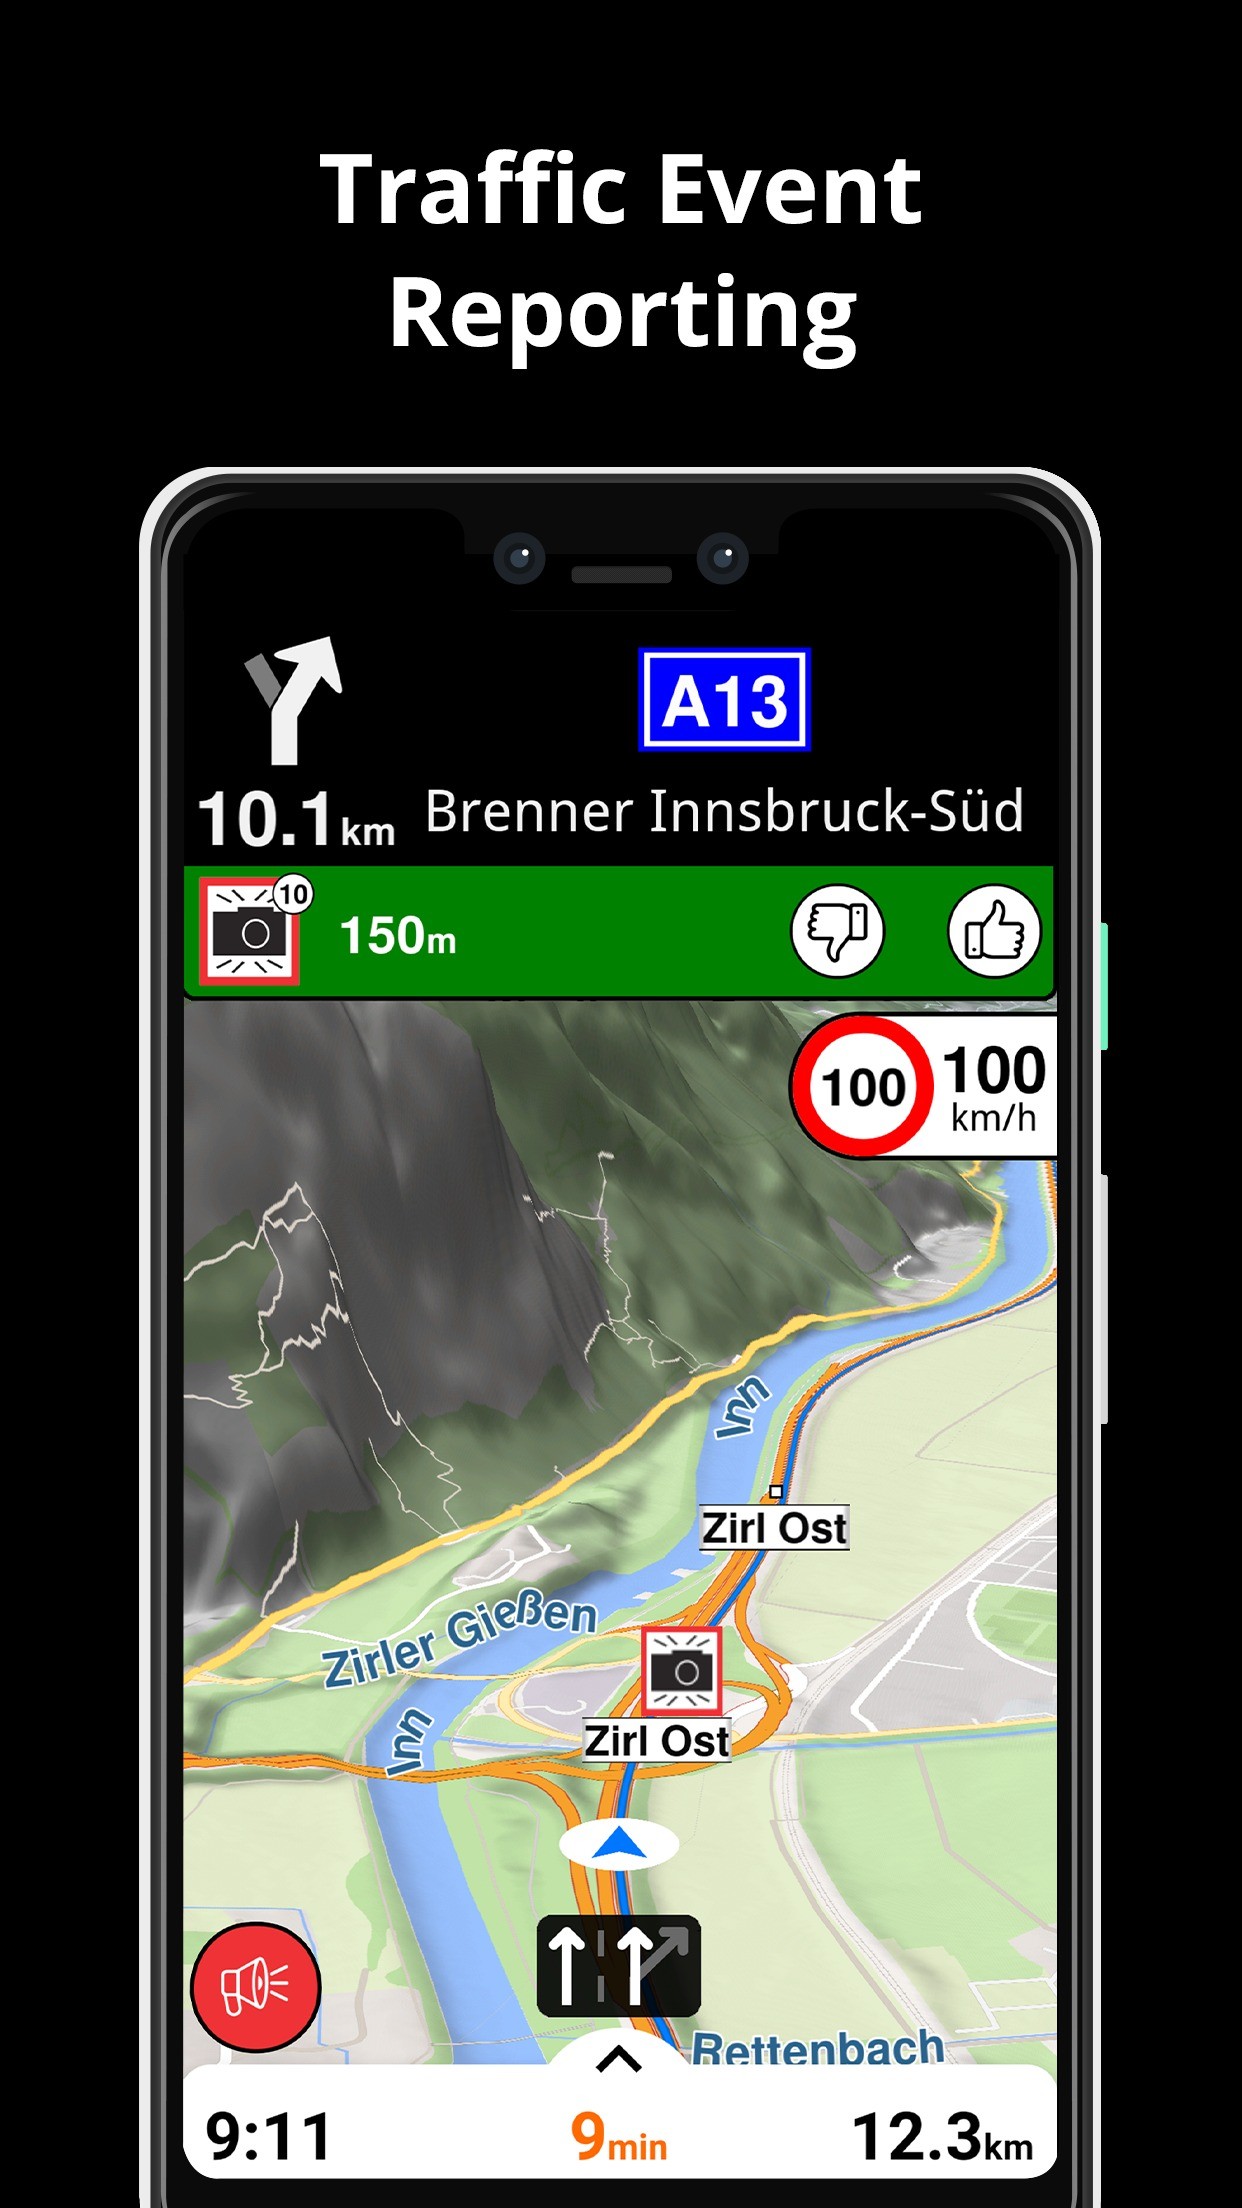 Android Auto: Display aufrüsten - Alternativer Launcher bringt neue  Navigation und viele Widgets (Screenshots) - GWB